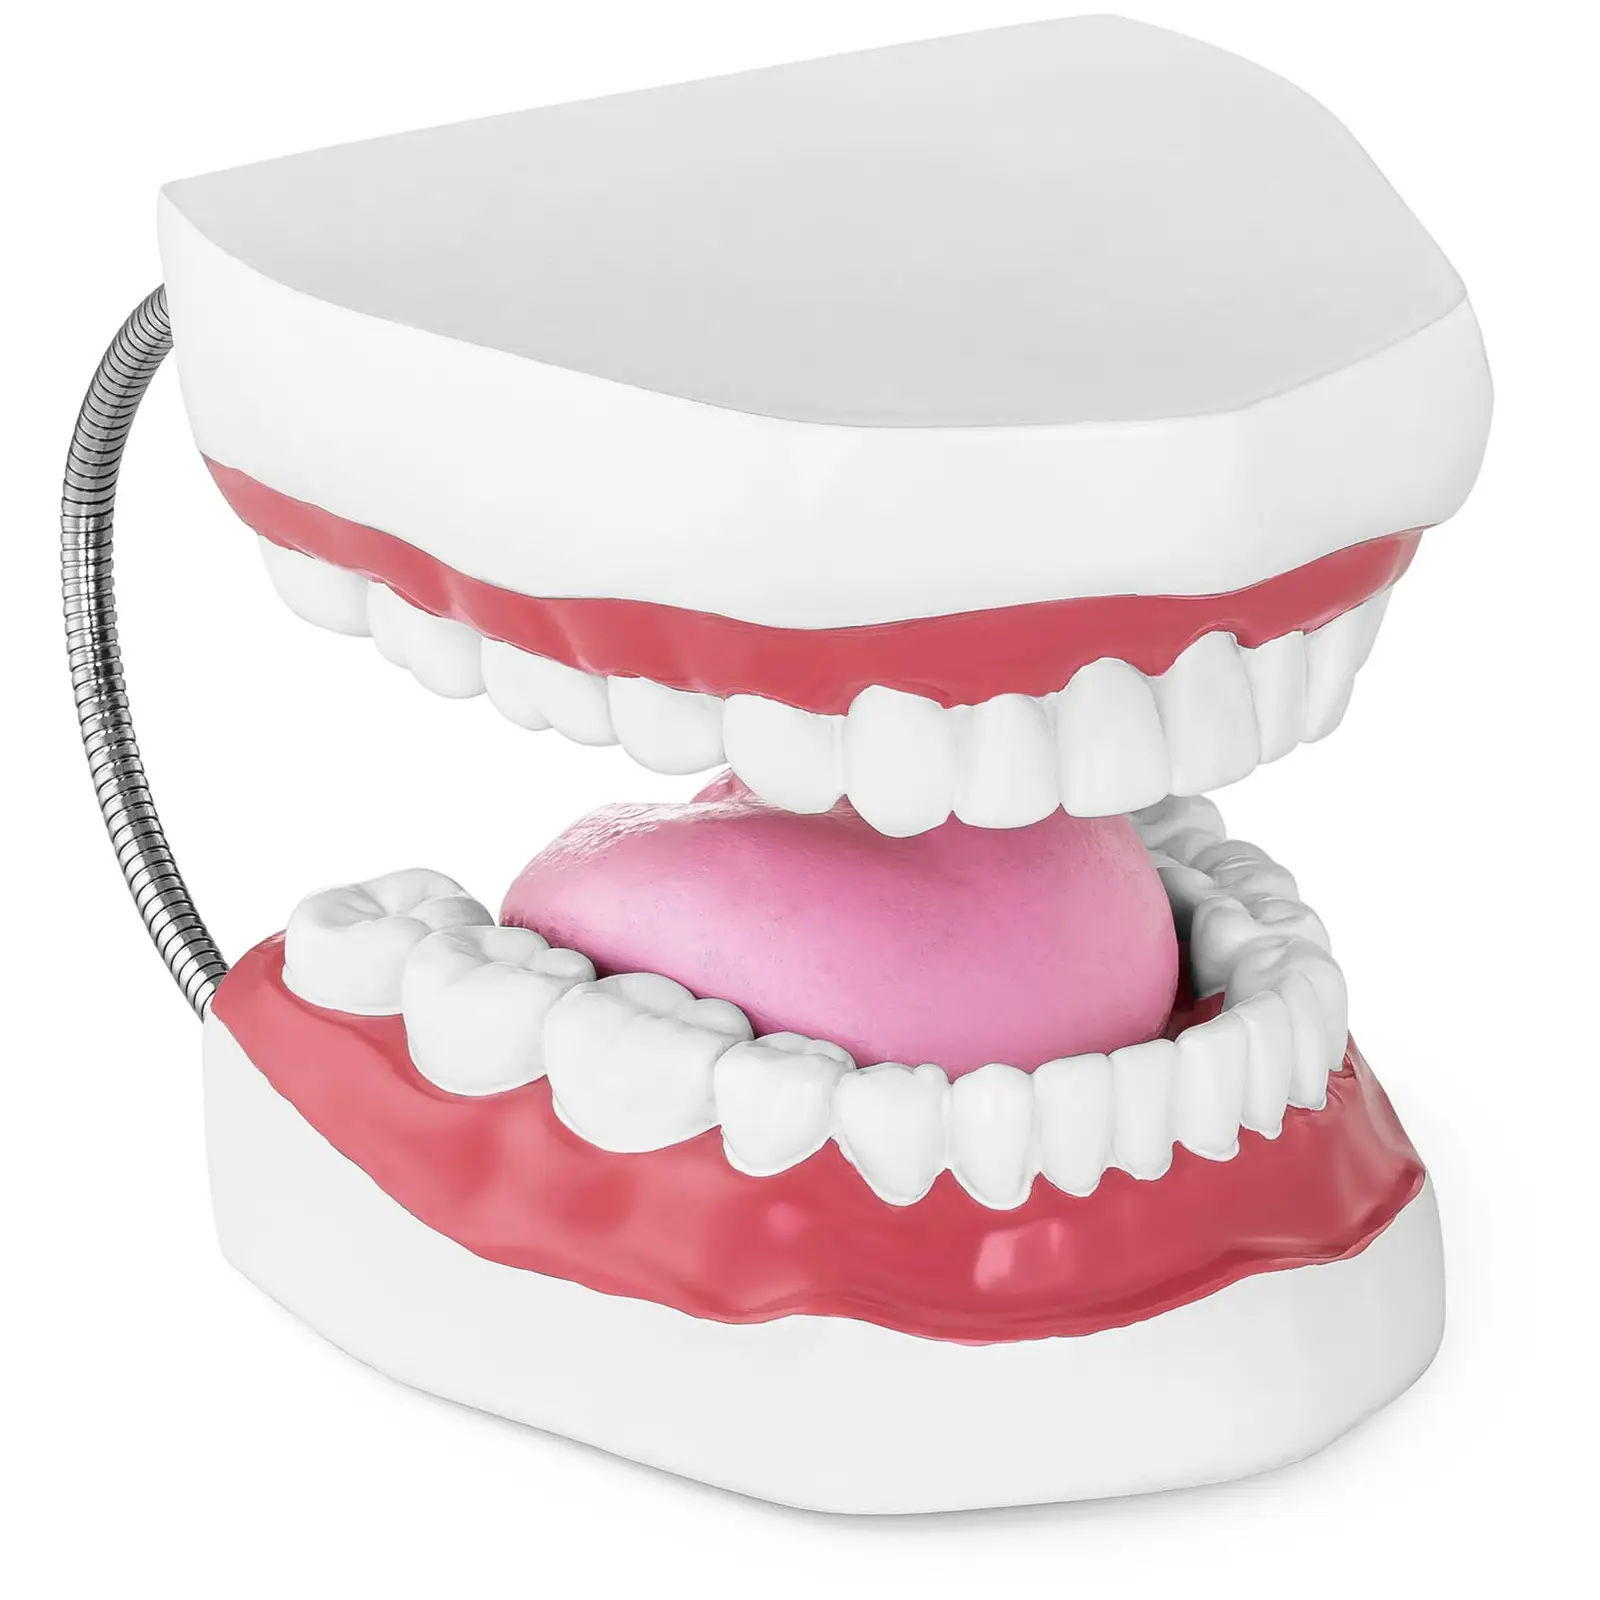 Modello anatomico denti - Dentatura